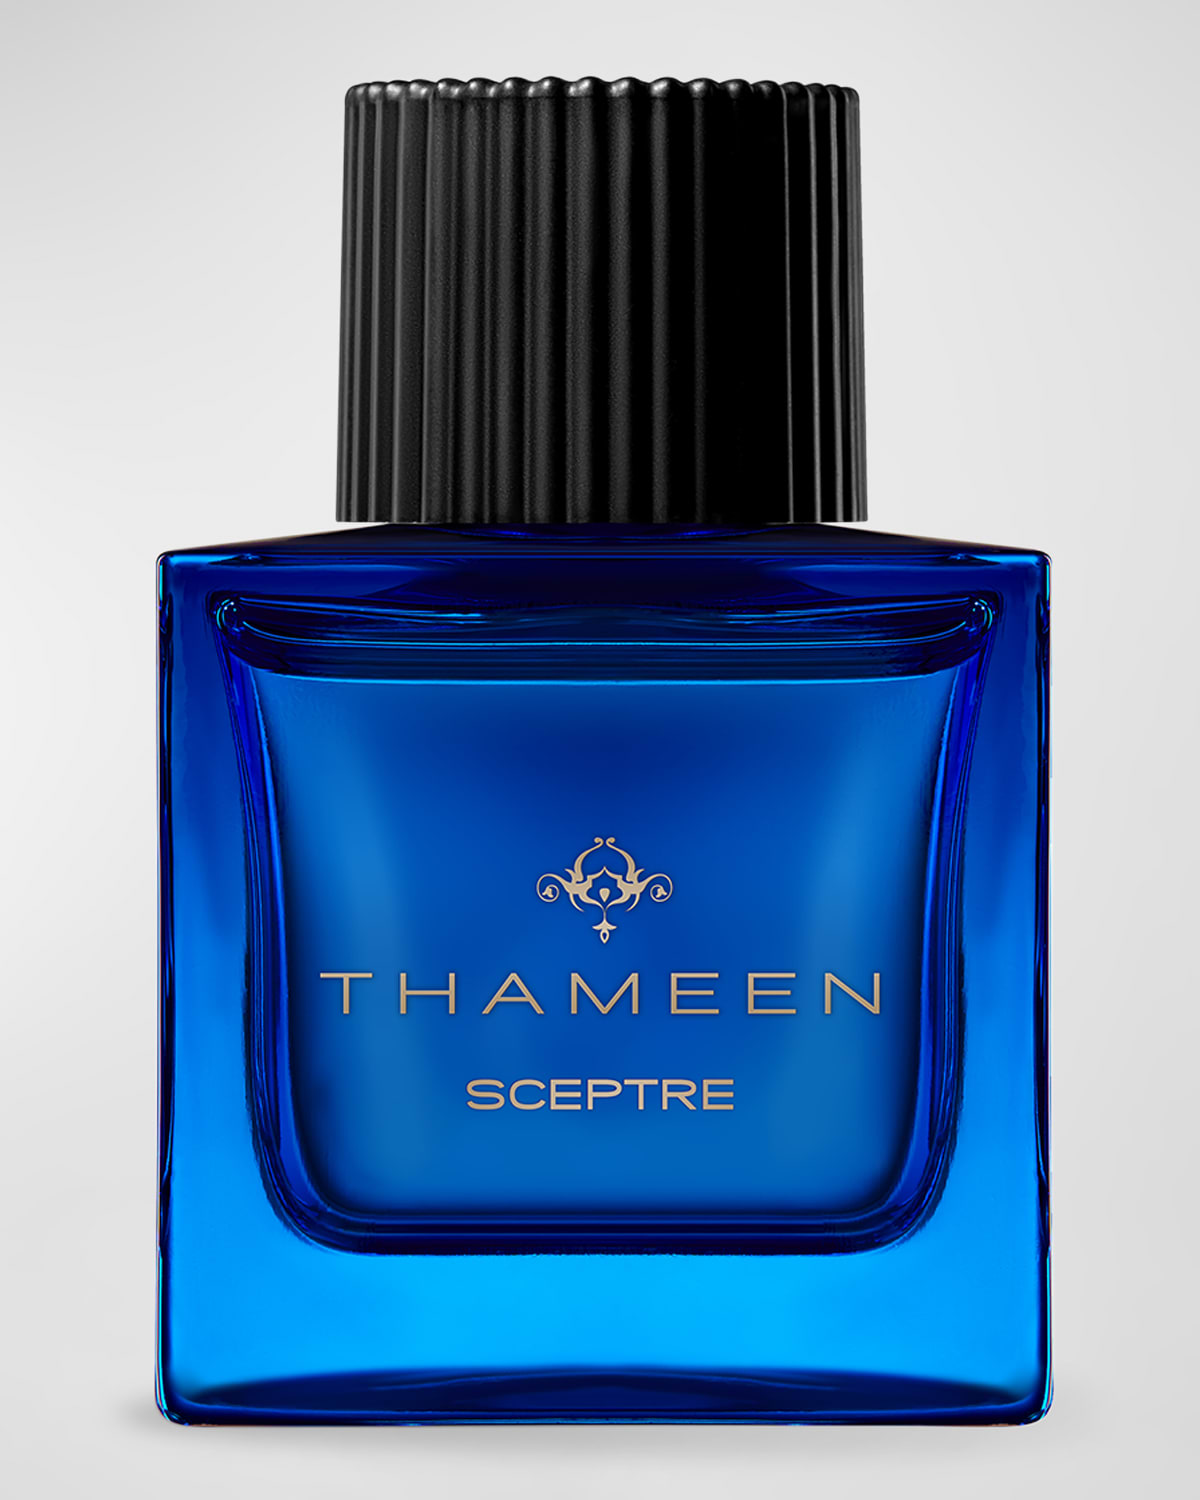 Sceptre Extrait de Parfum, 1.7 oz.